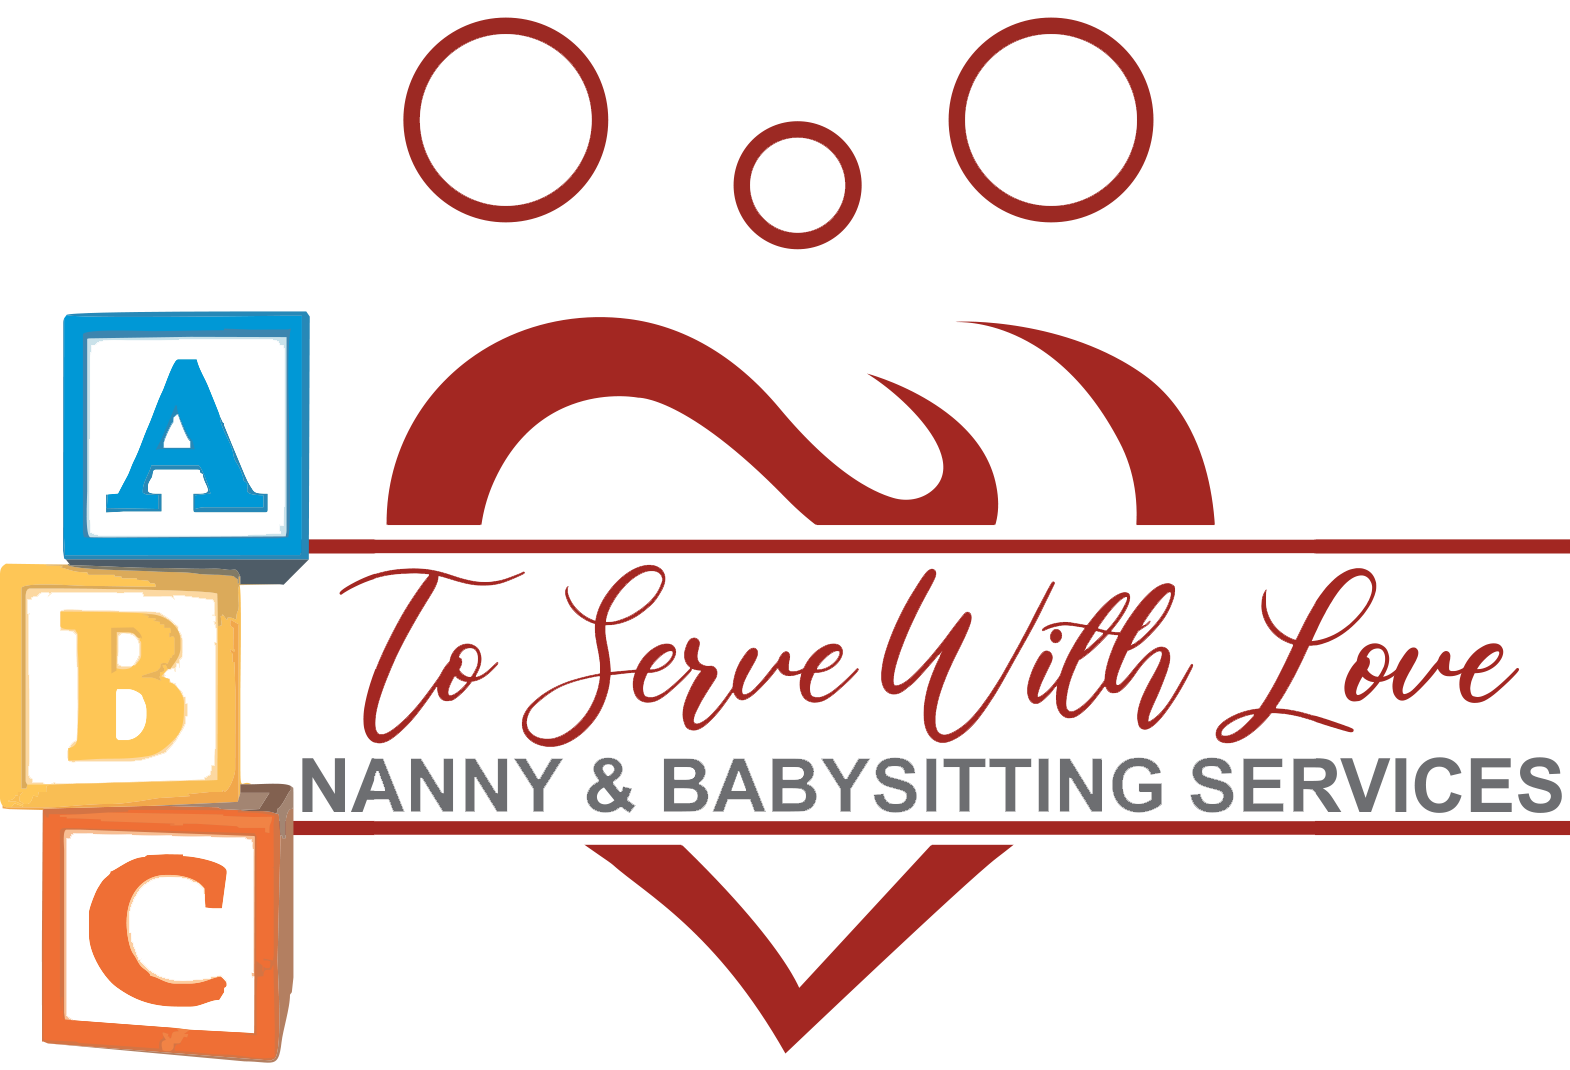 Nanny & Babysitting Services